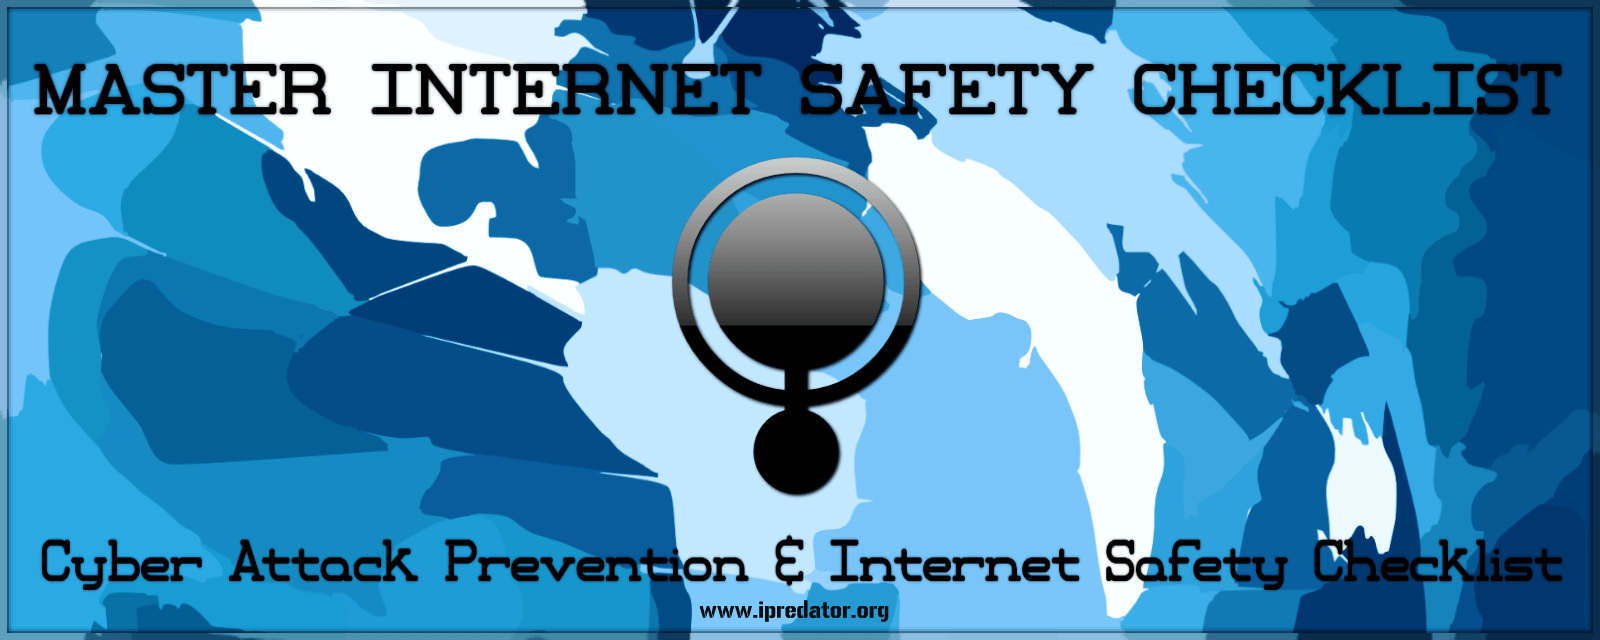 free-cyber-attack-prevention-internet-safety-checklist-ipredator-new-york-nuccitelli-1600x640